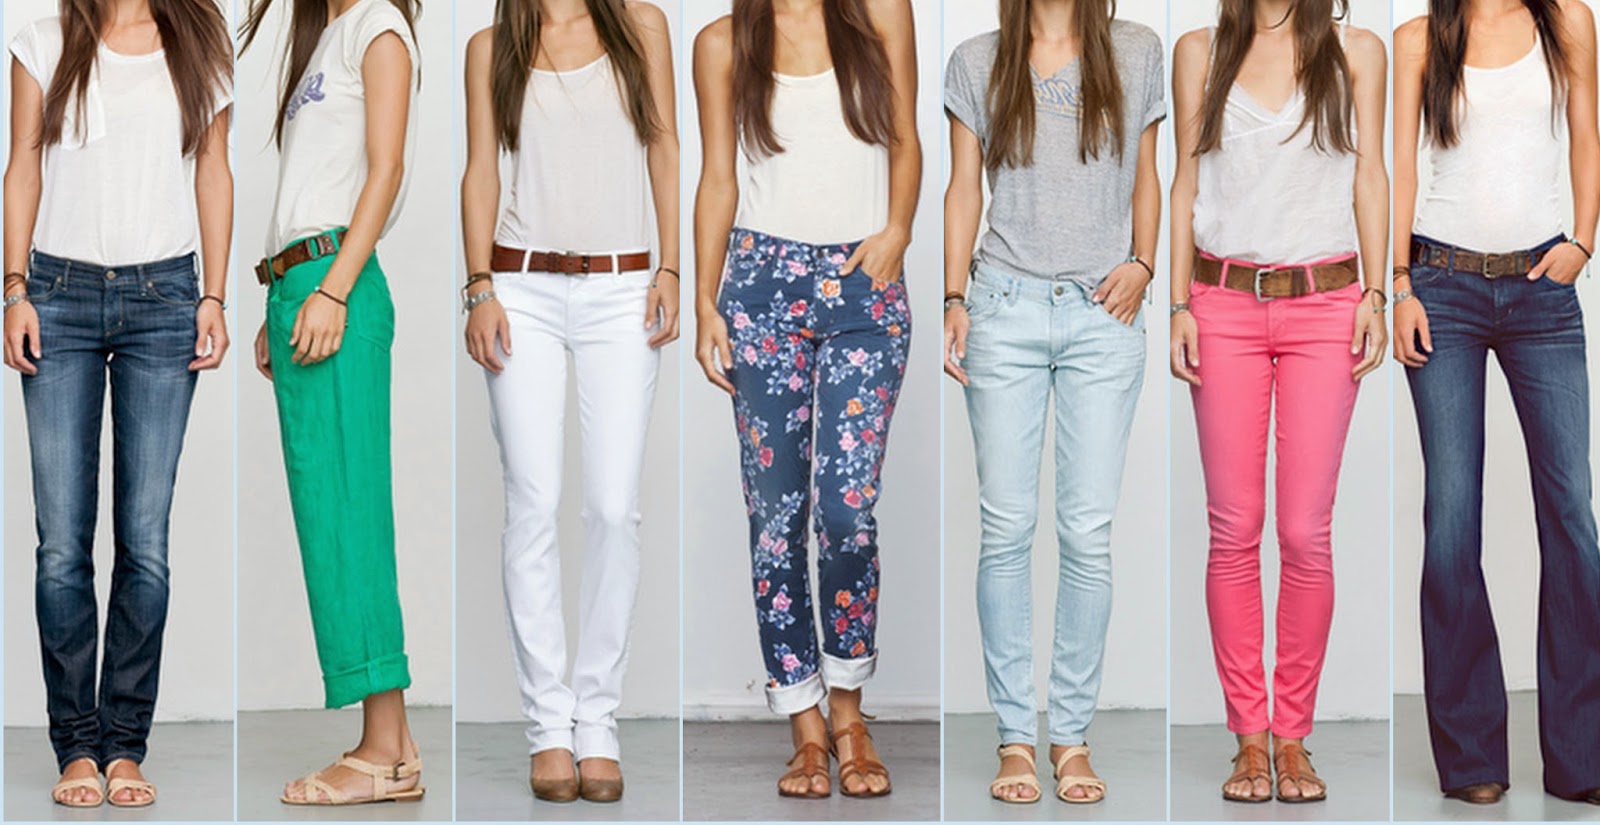 Quần jeans nữ thường có nhiều họa tiết và màu sắc hơn quần jeans nam